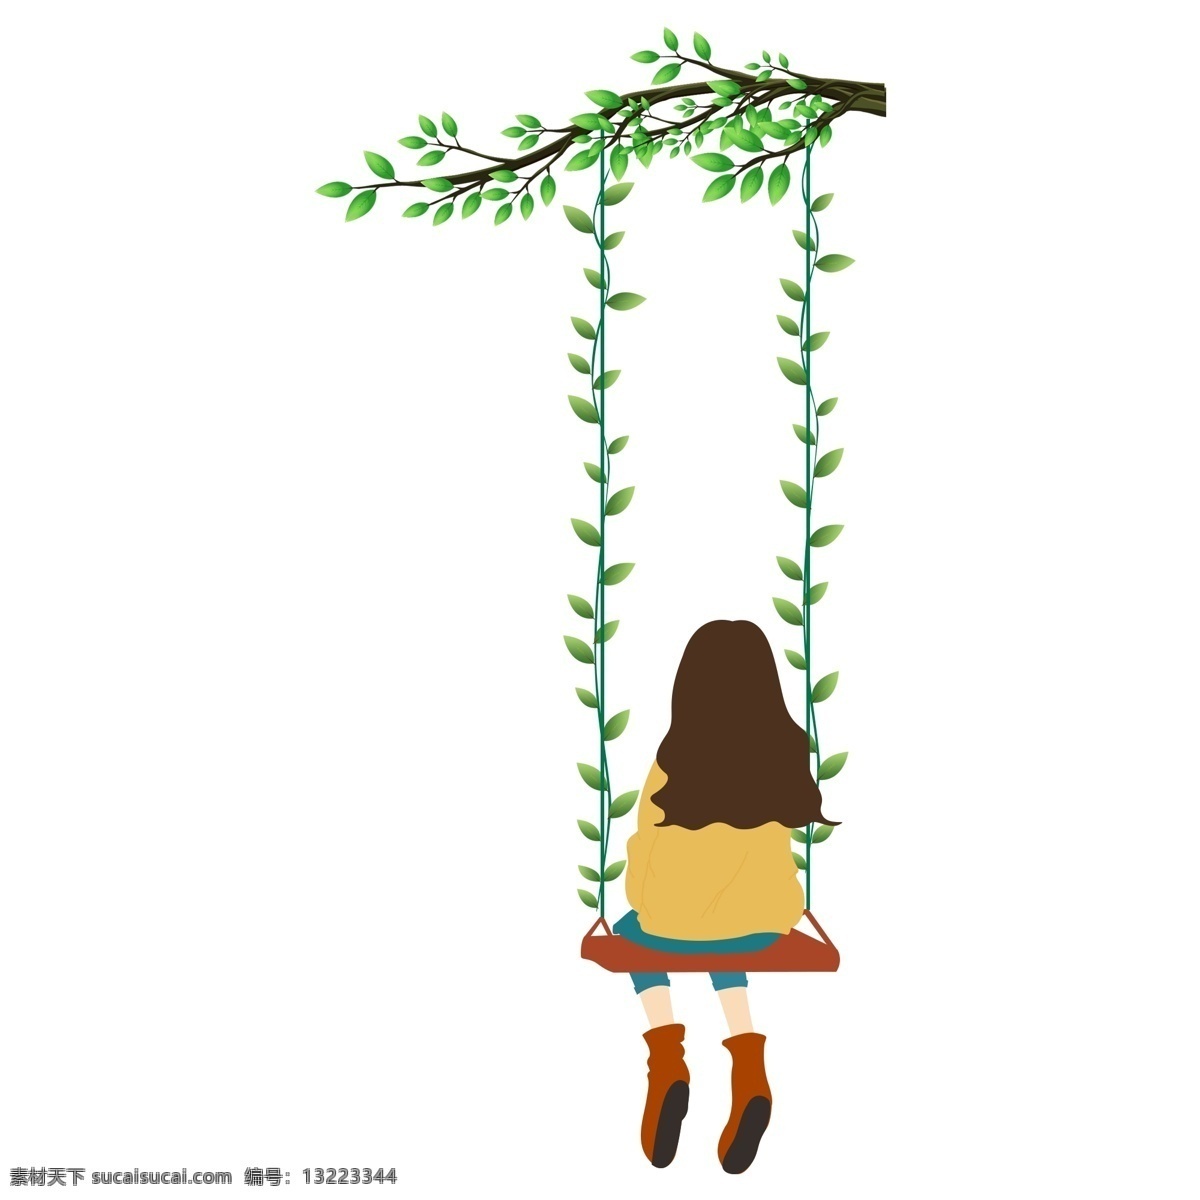 坐在 秋千 上 的卡 通 女孩 背影 元素 绿色 卡通女孩 绿树枝 元素设计 荡秋千的女孩